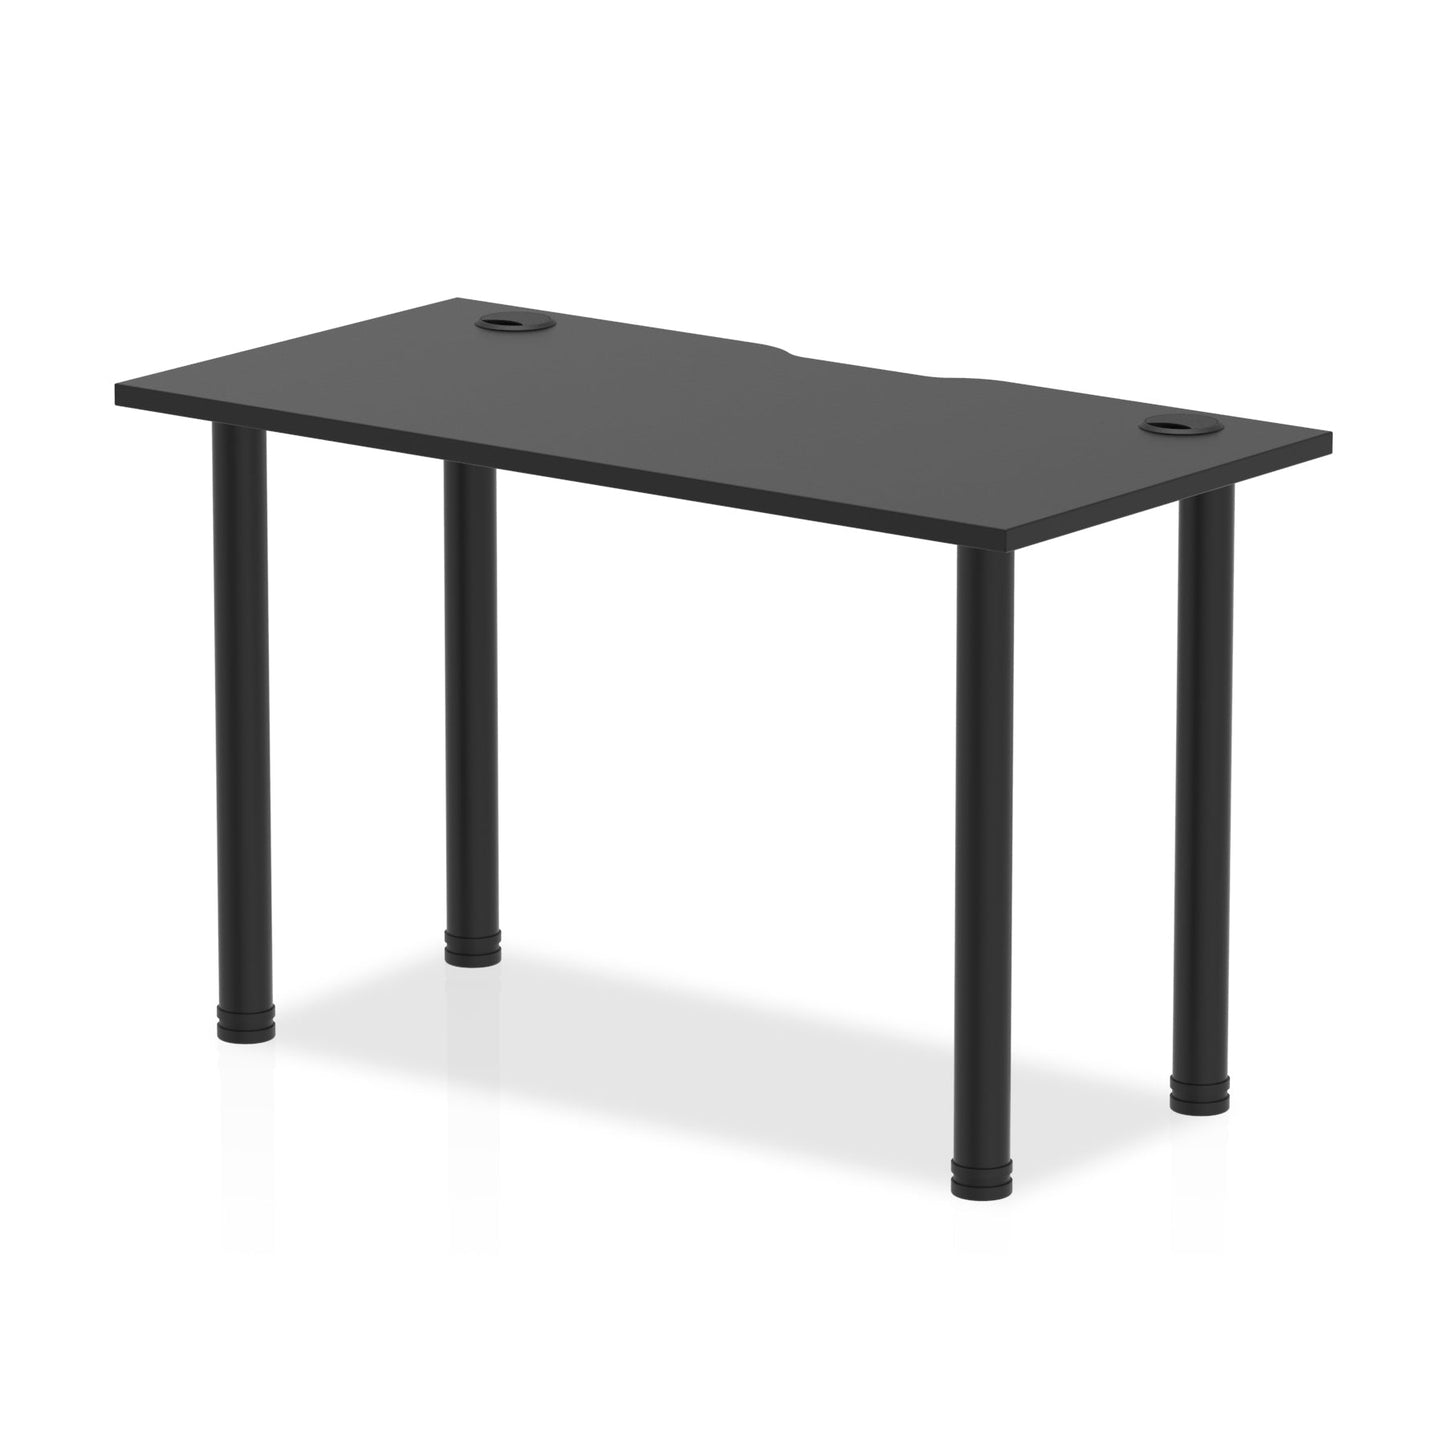 Impulse Black Series Slimline Straight Table 600mm Deep